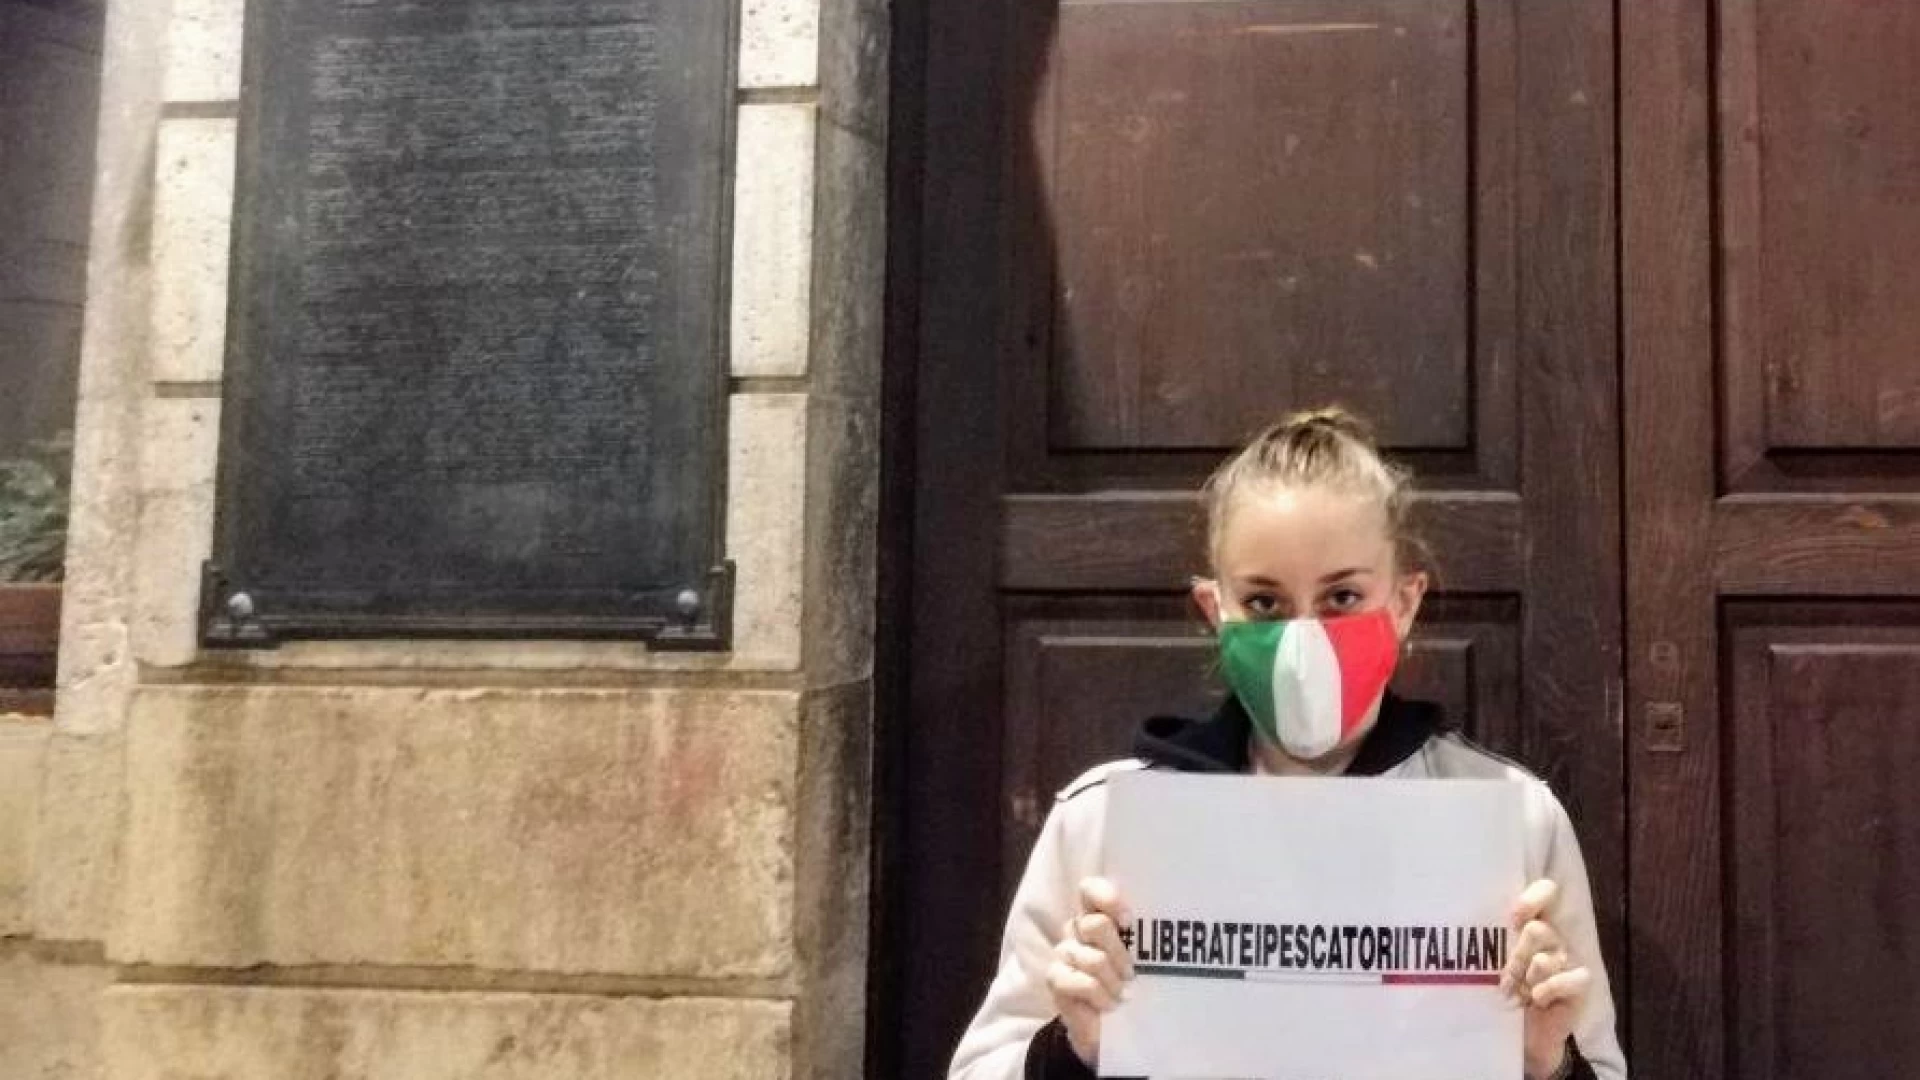 Libia: "liberate i pescatori italiani", striscioni in tutta Italia e appello al governo di alcuni consiglieri. In Molise Mozione presentata da Francesca Bruno.